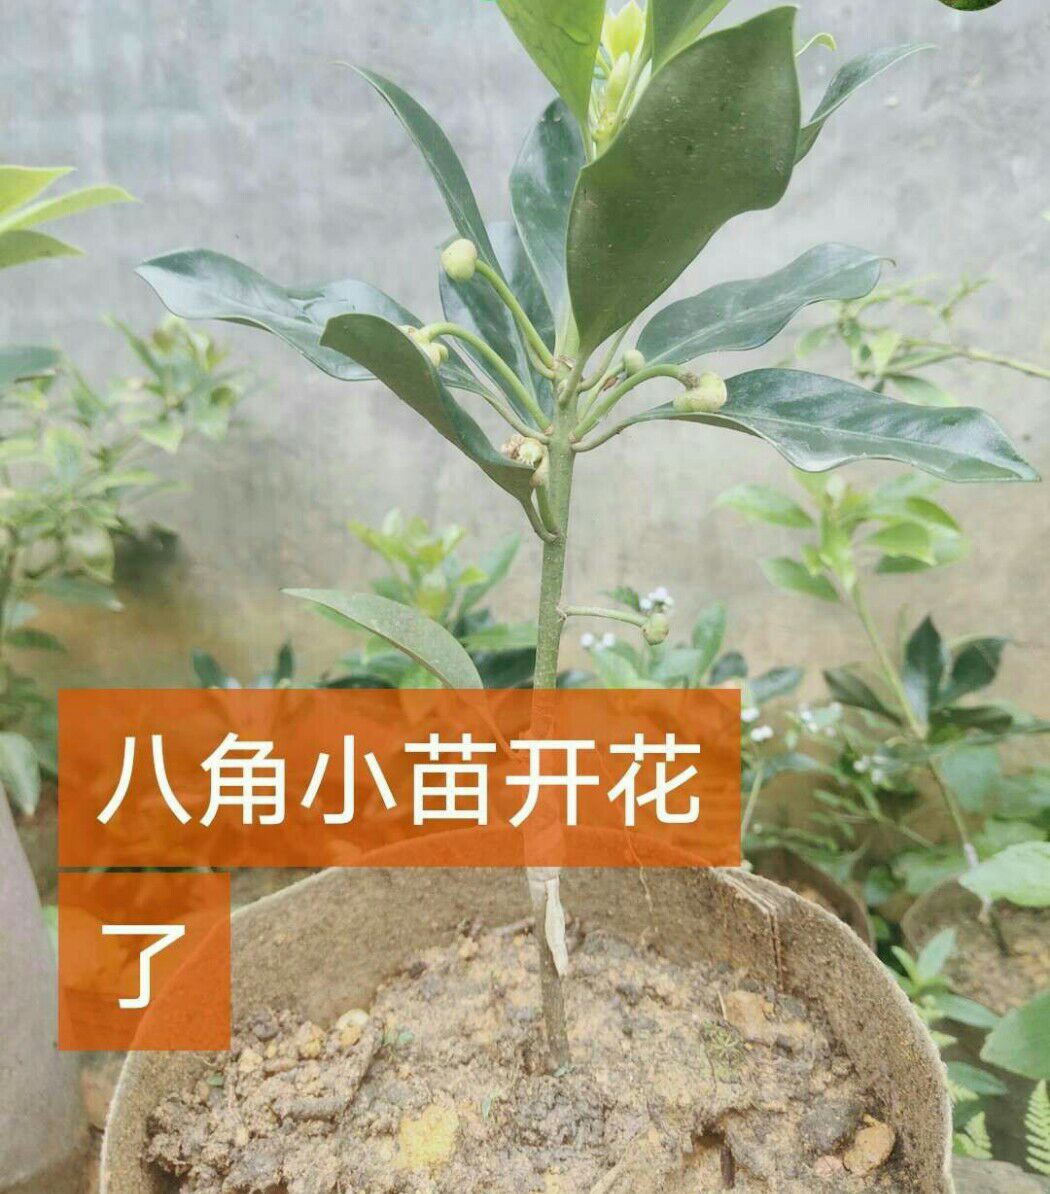 [正宗] 新品种八角树苗 广西优良嫁接苗直生苗高产量